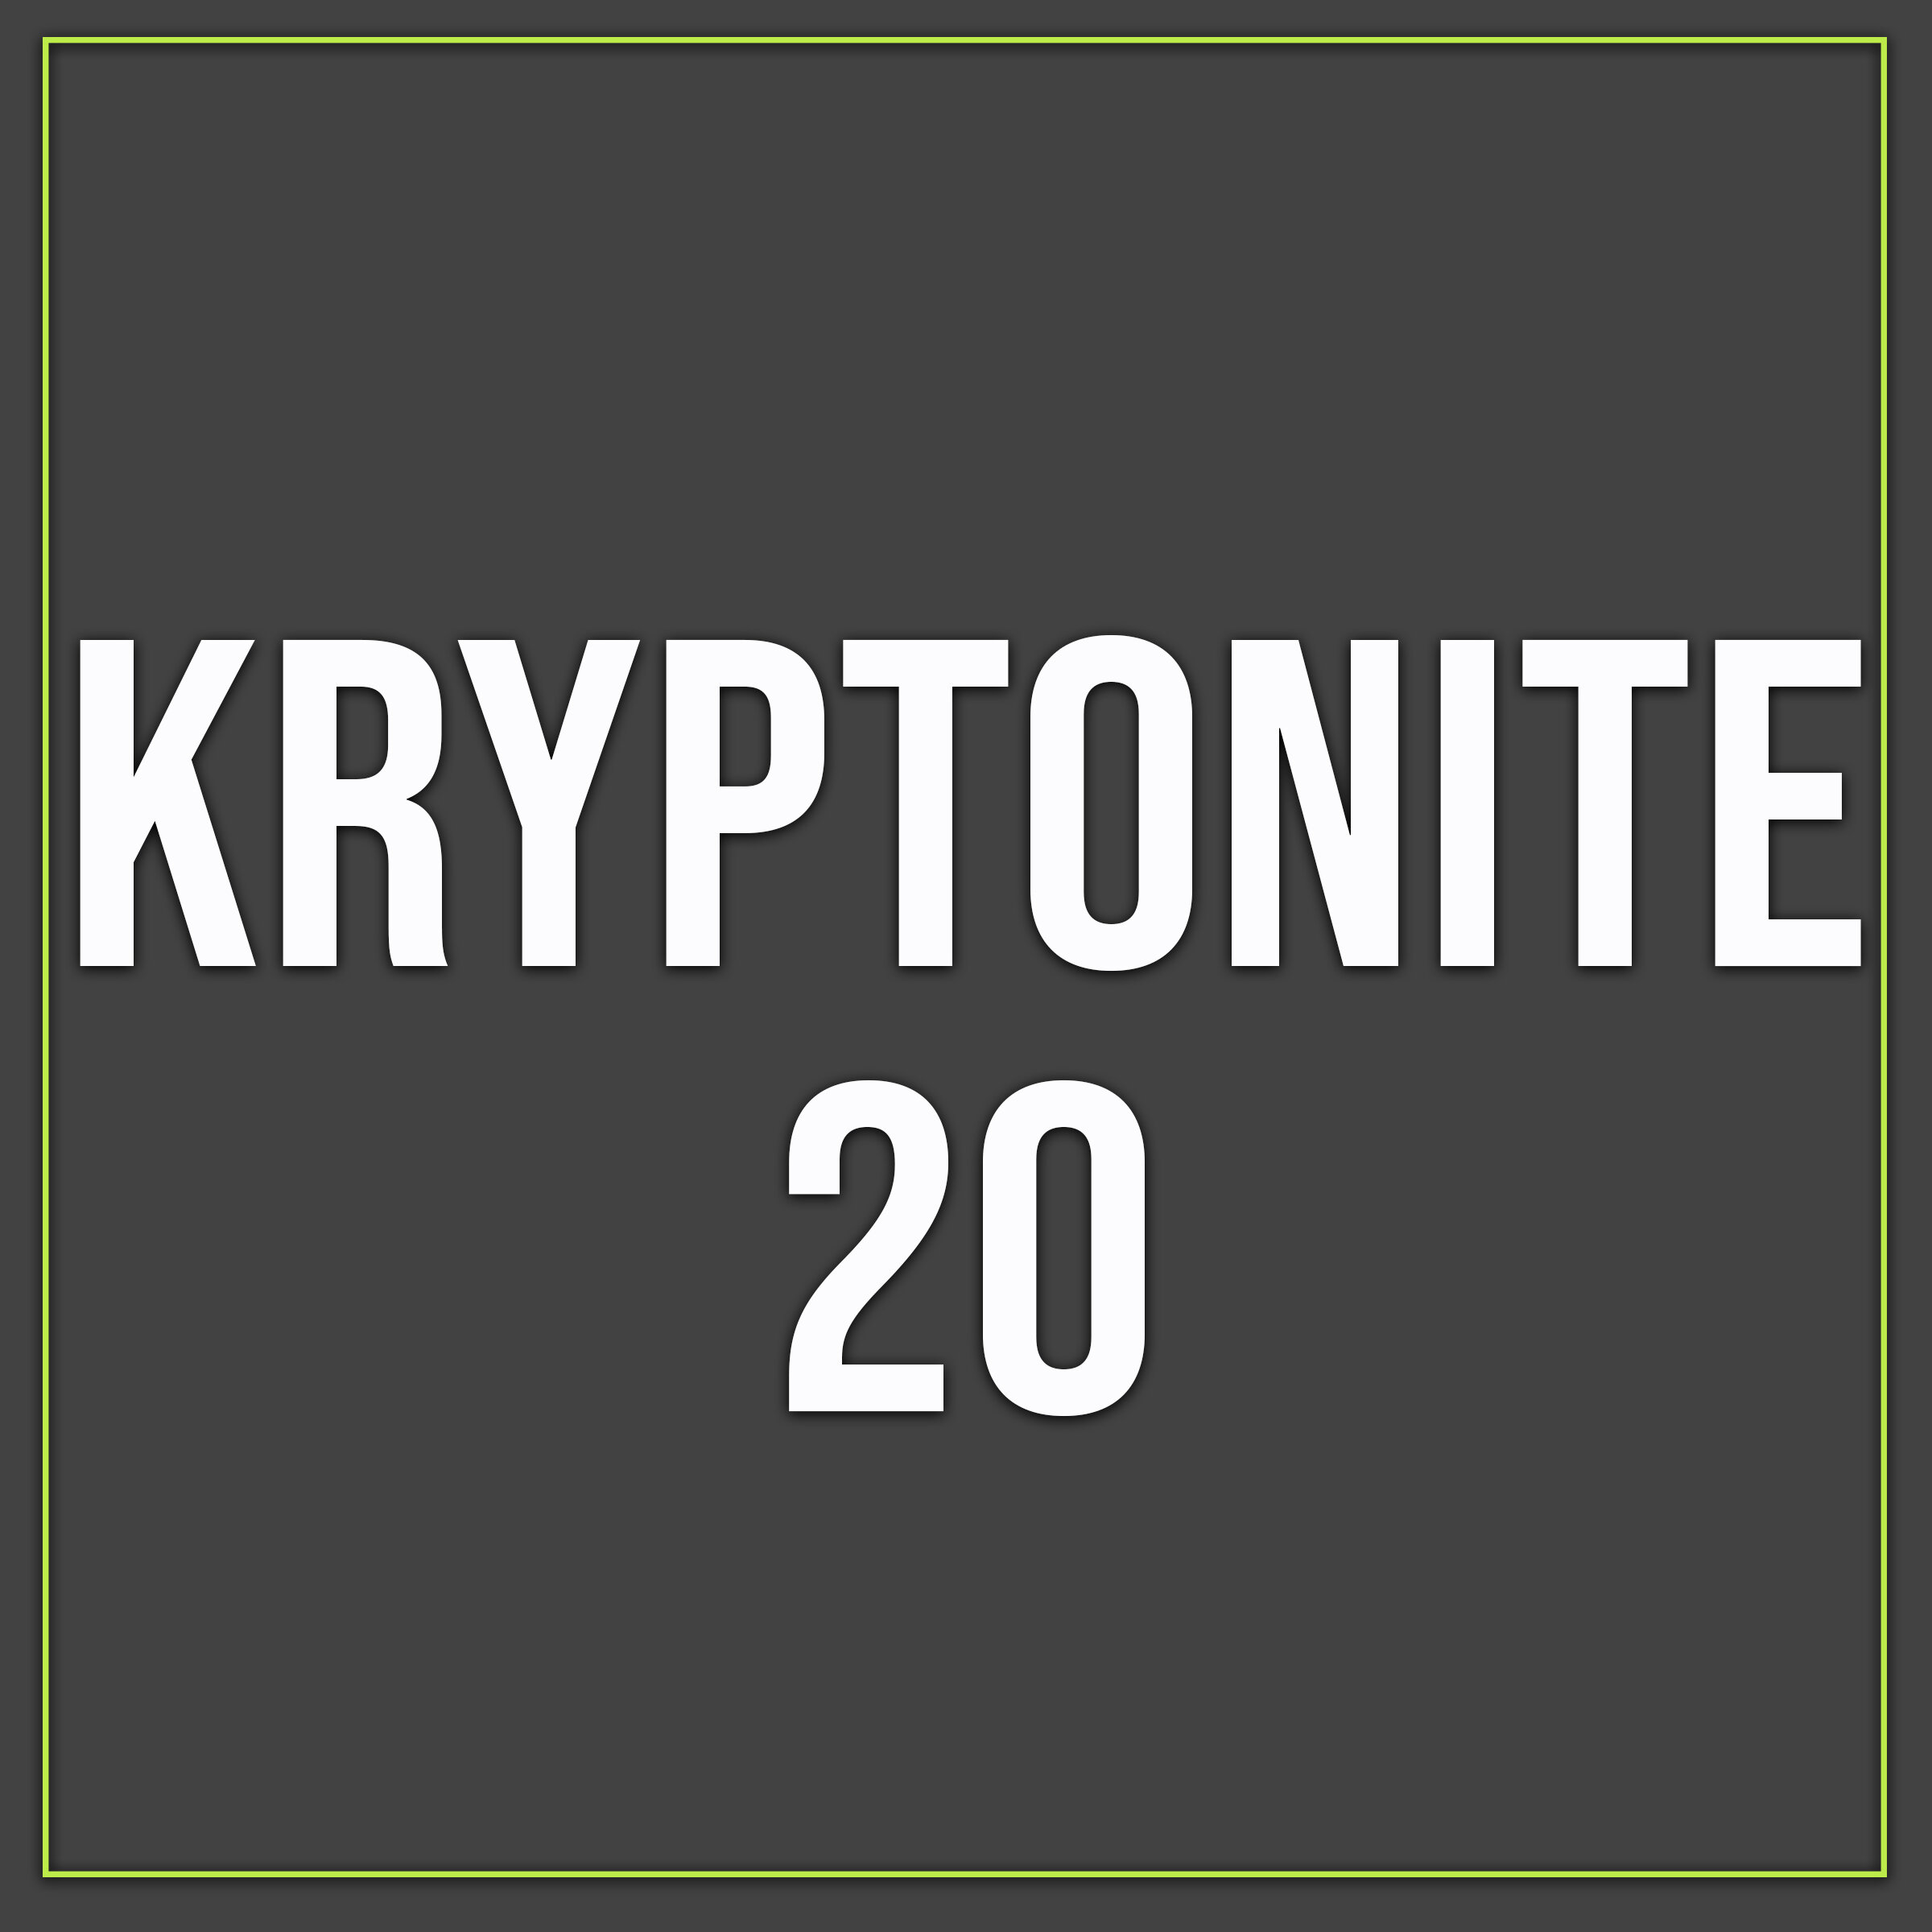 Kryptonite 20.jpg